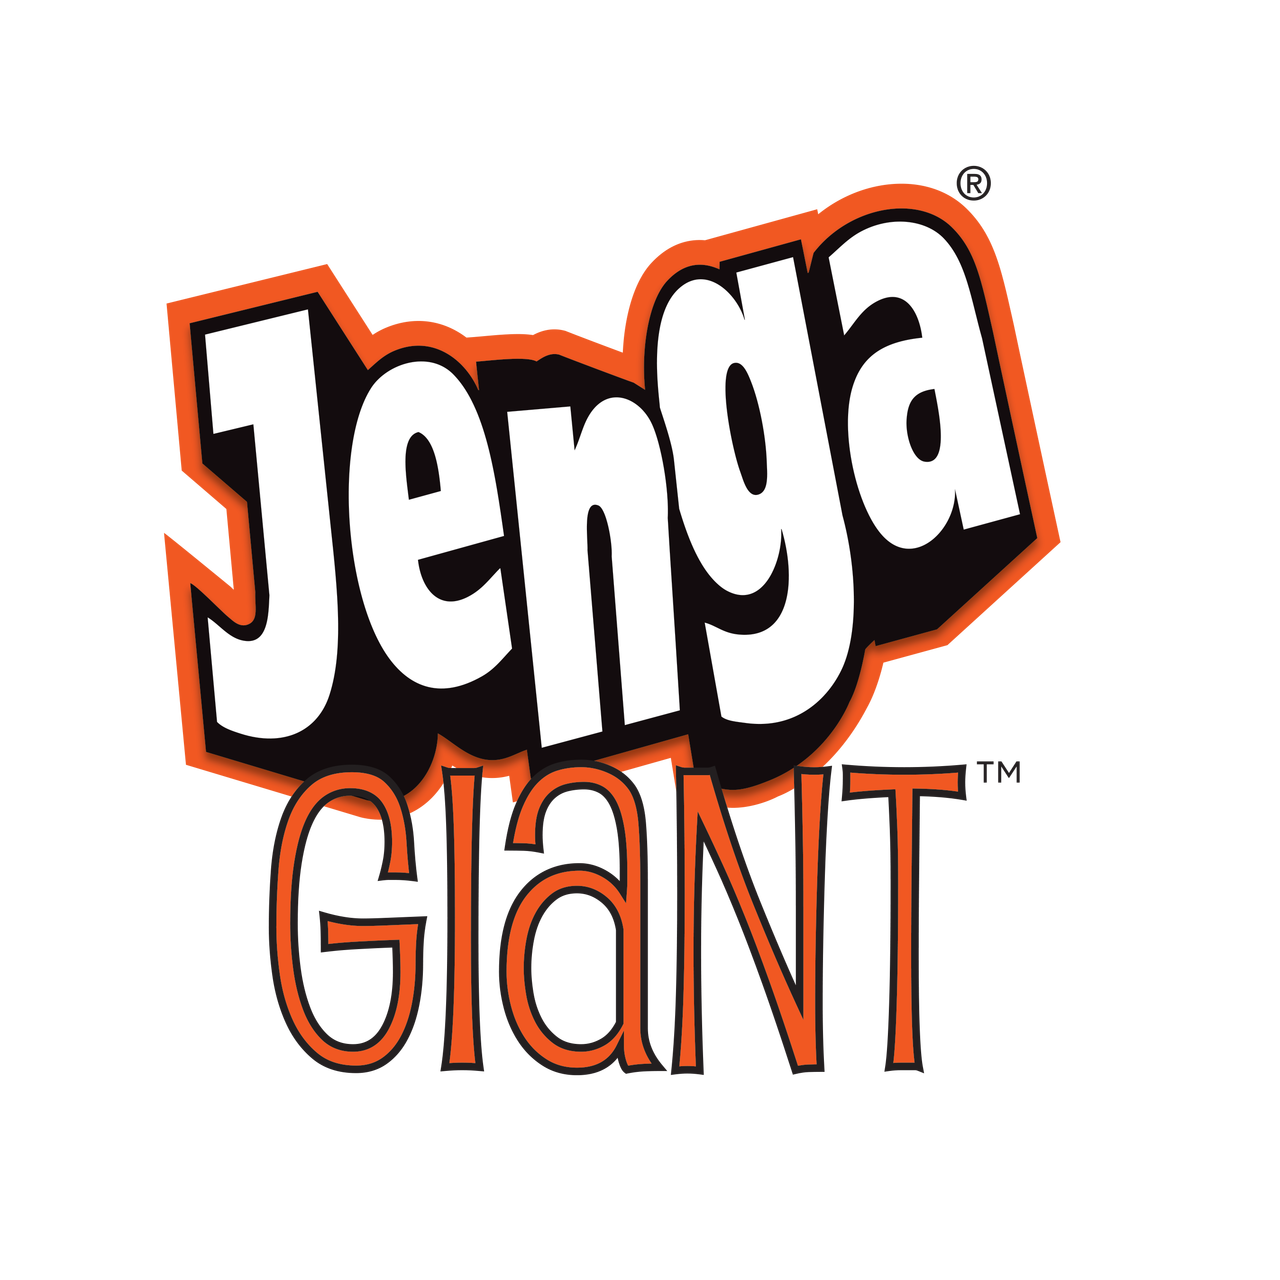 giant jenga game black friday